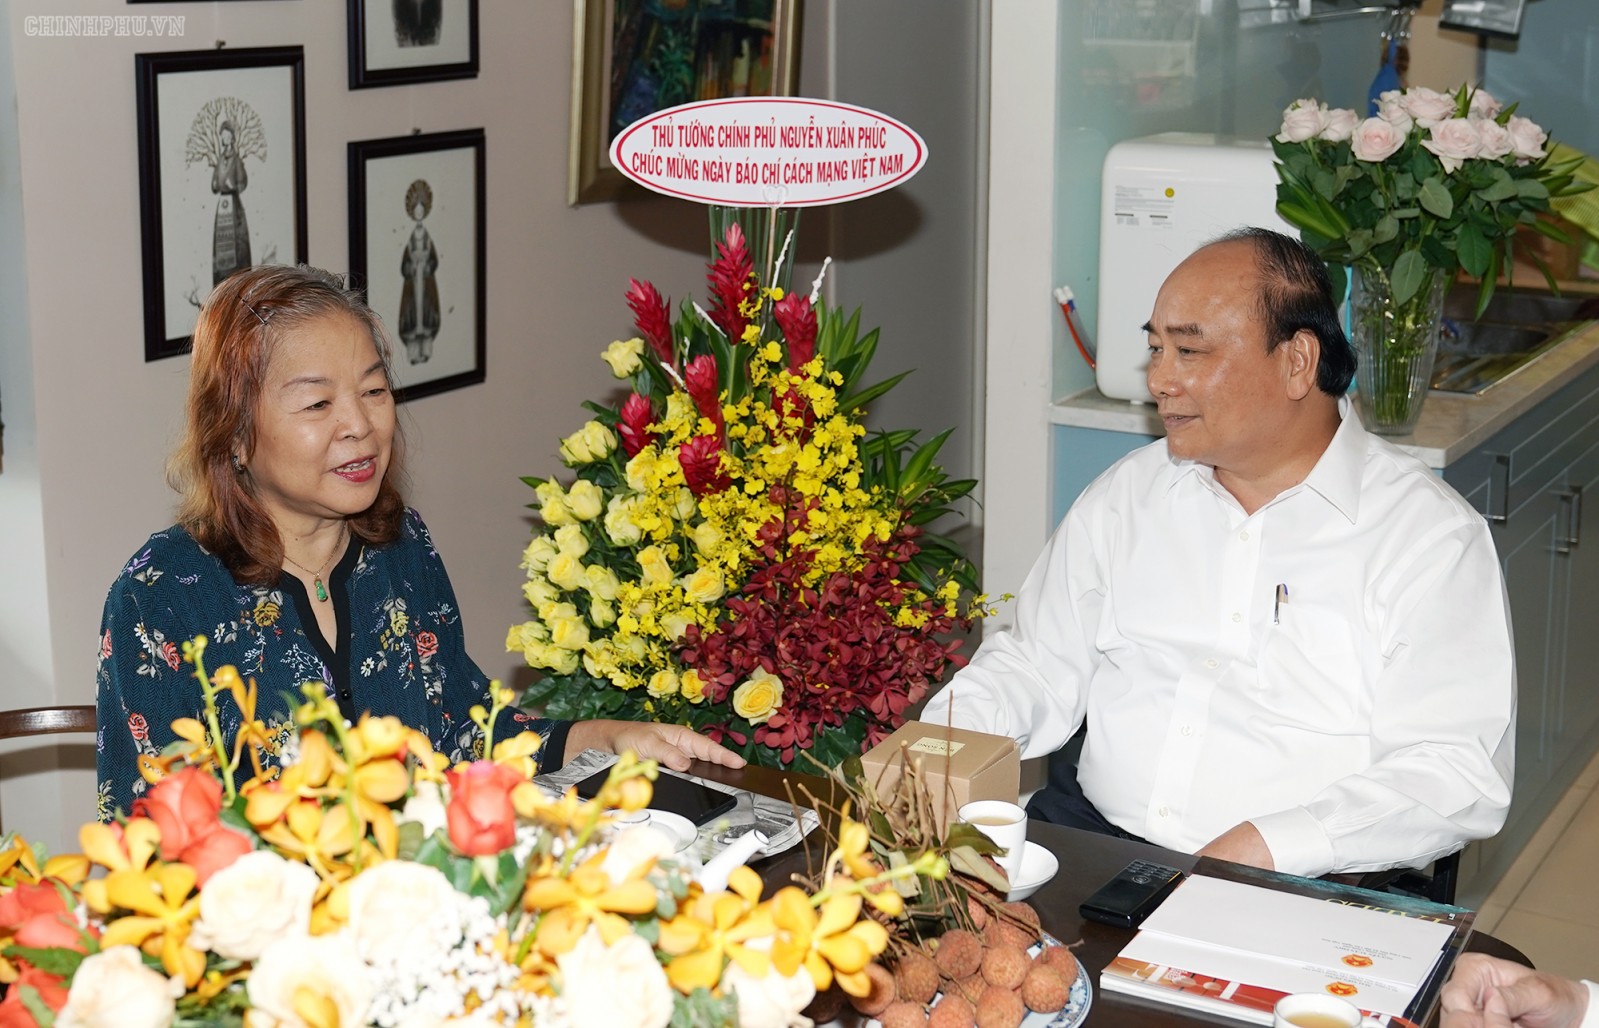 Thủ tướng Nguyễn Xuân Phúc tặng hoa nhà báo Nguyễn Thị Hằng Nga. Ảnh: VGP/Quang Hiếu